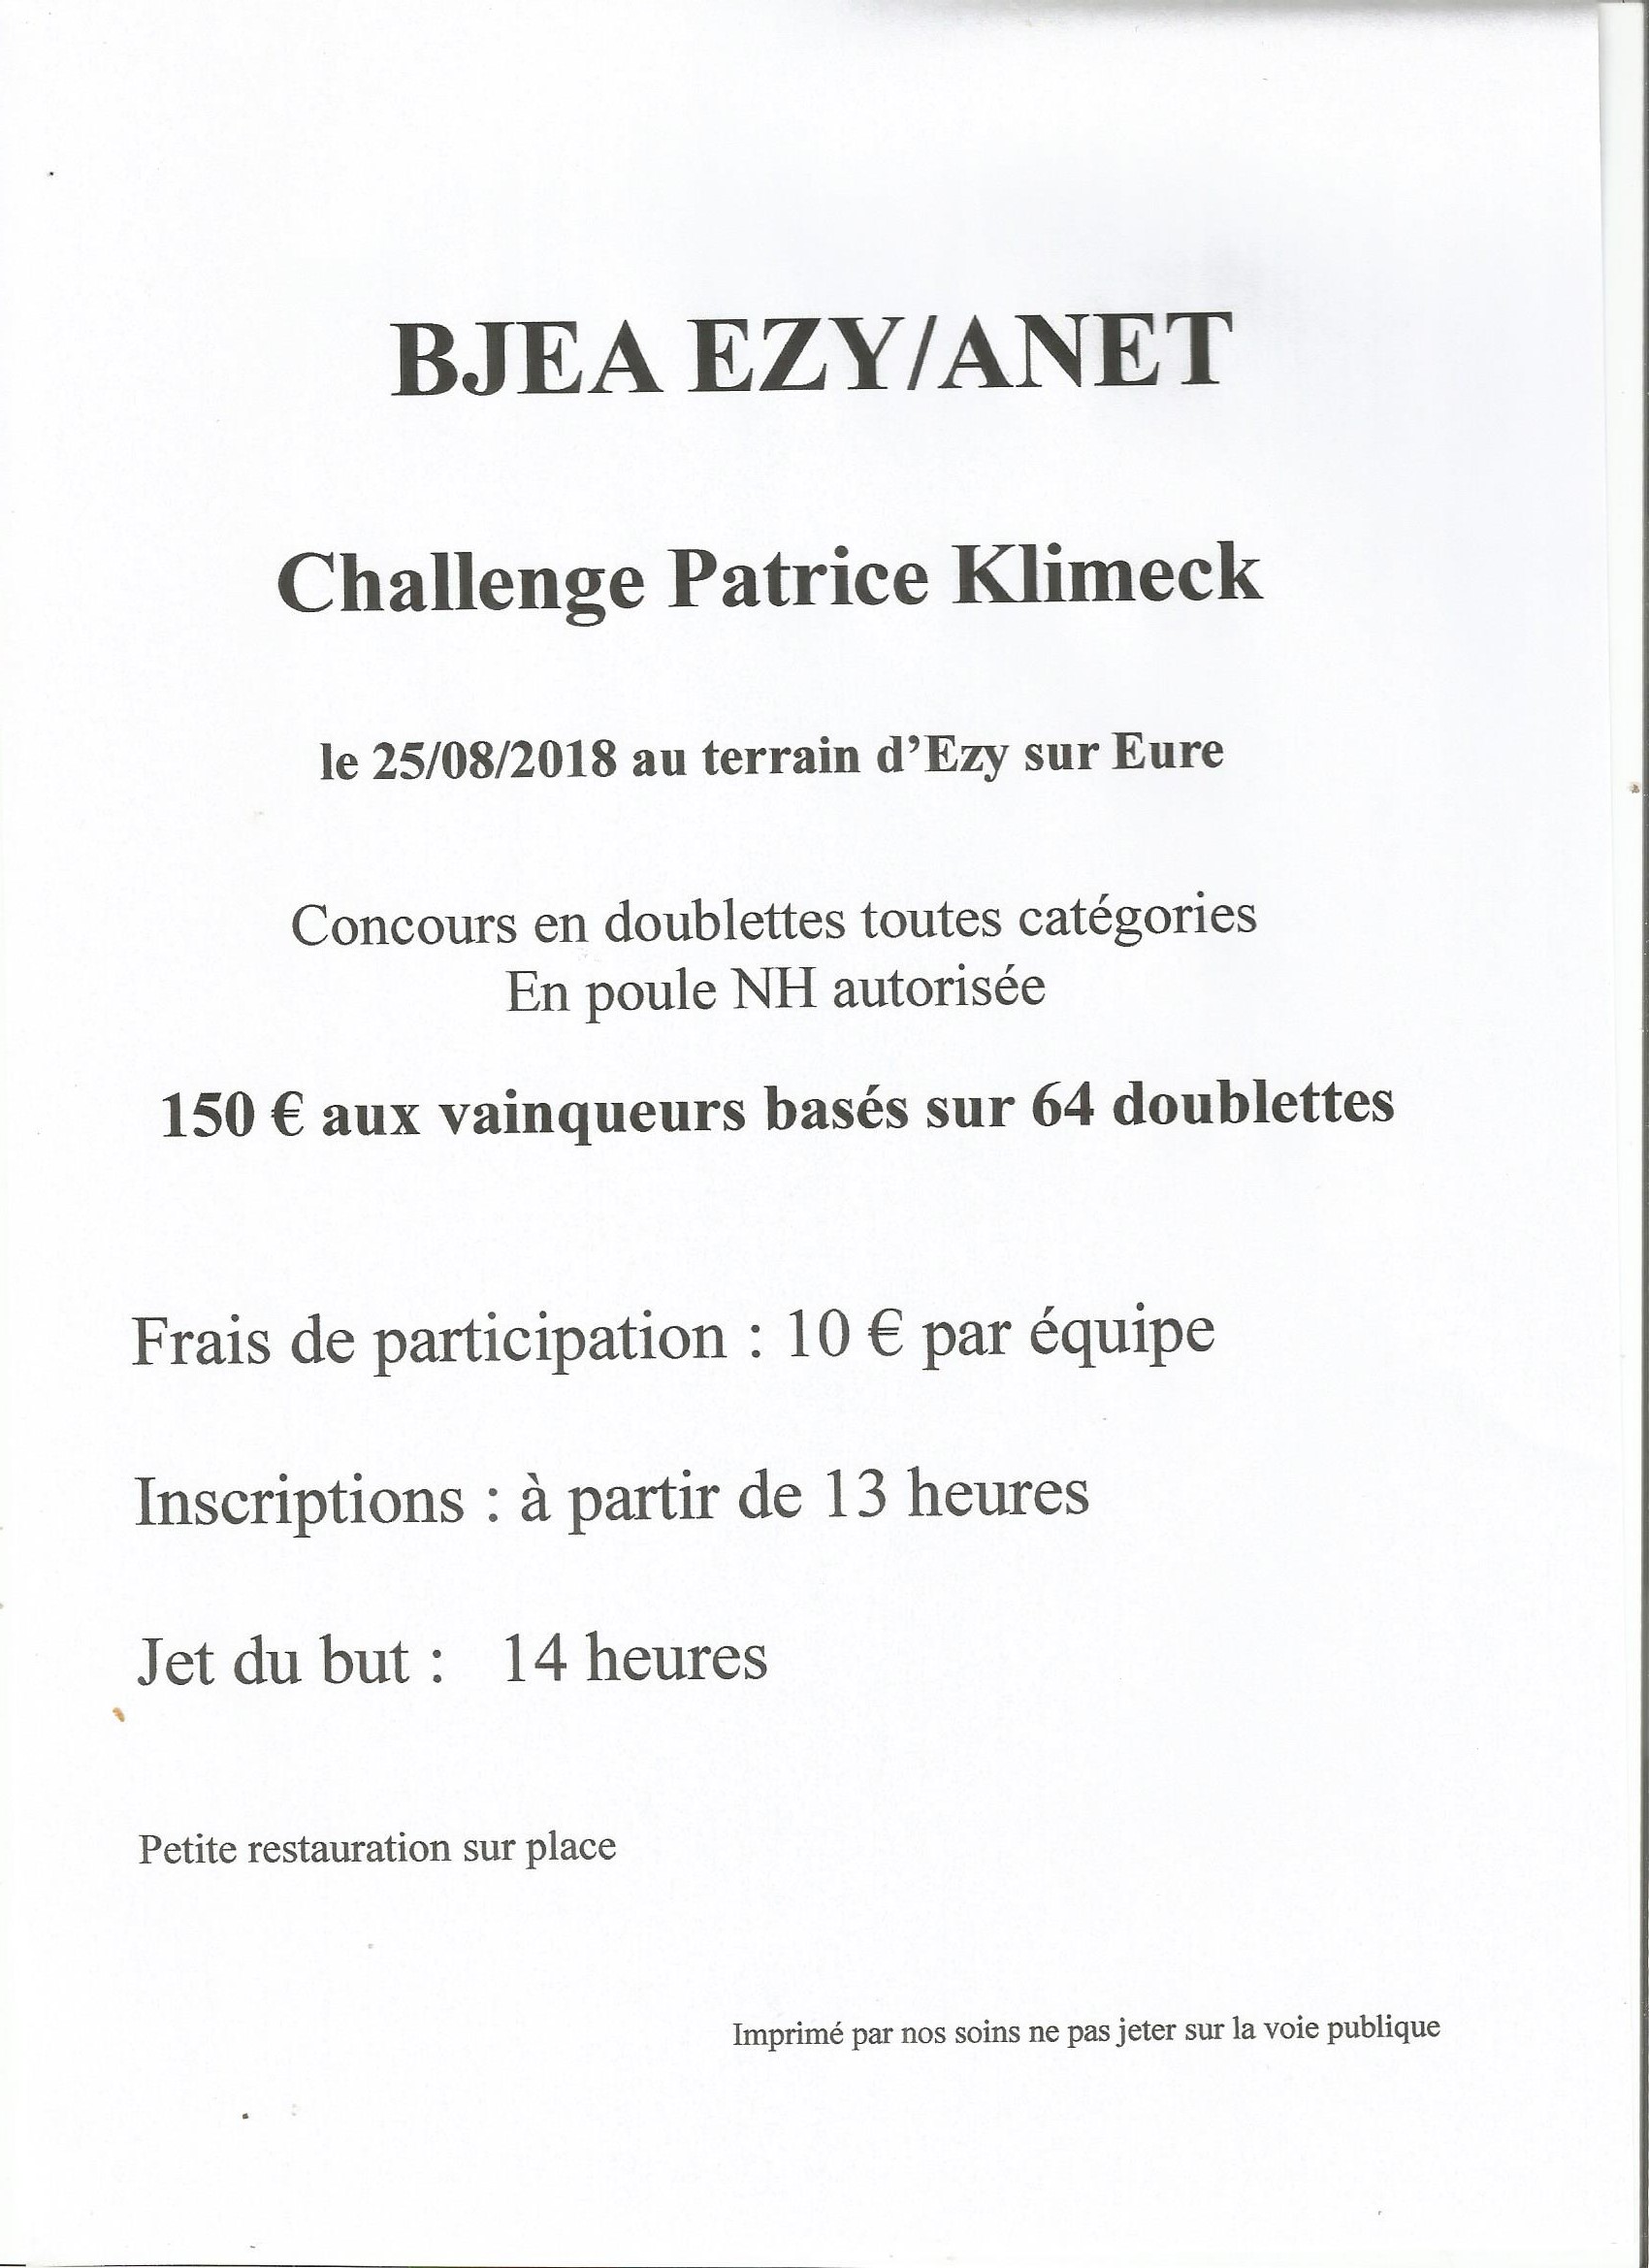 Challenge Patrice Klimeck à Ezy Sur Eure